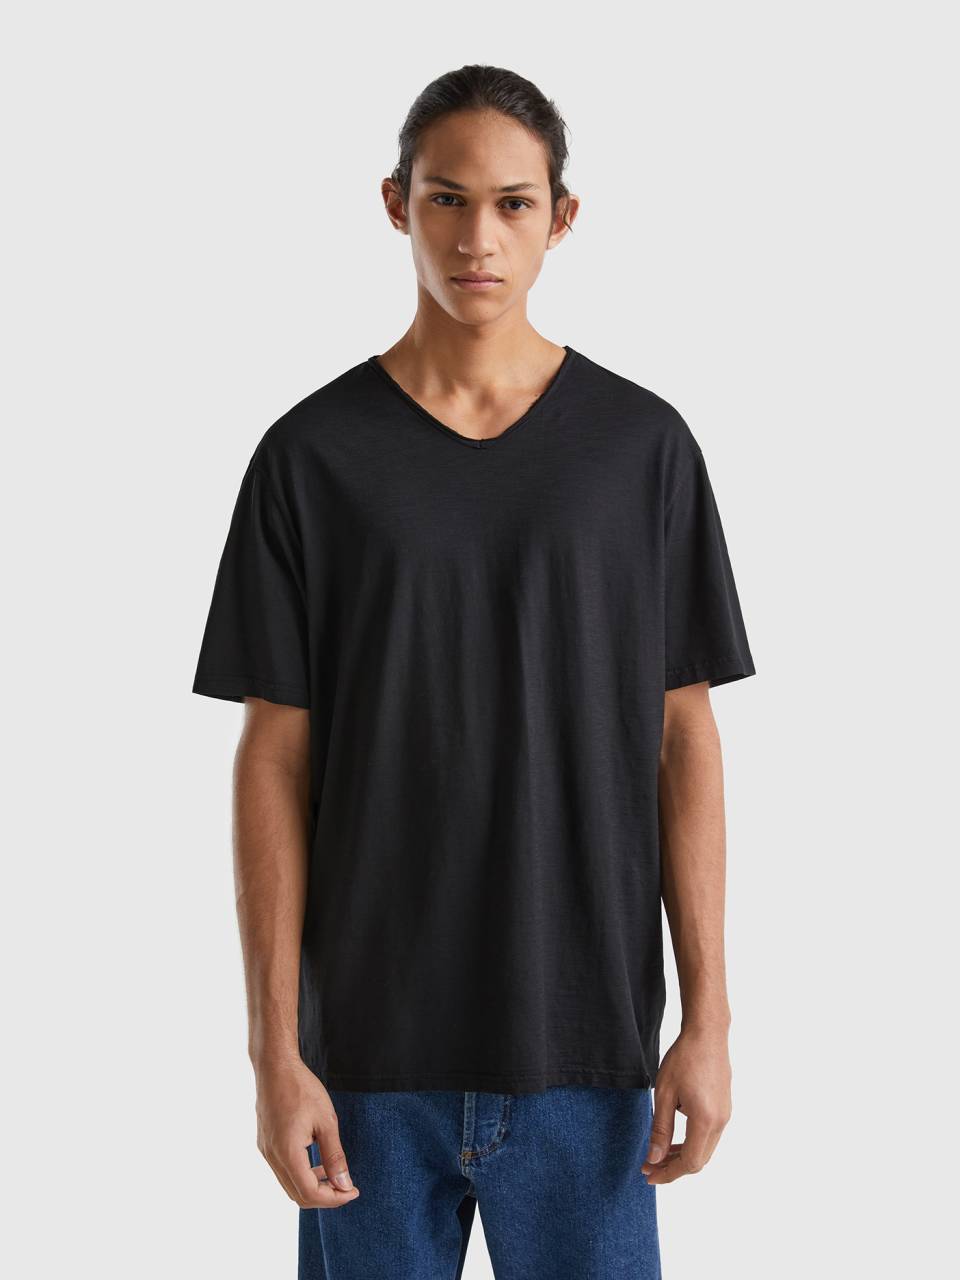 - t-shirt Benetton cotton Black 100% in V-neck |